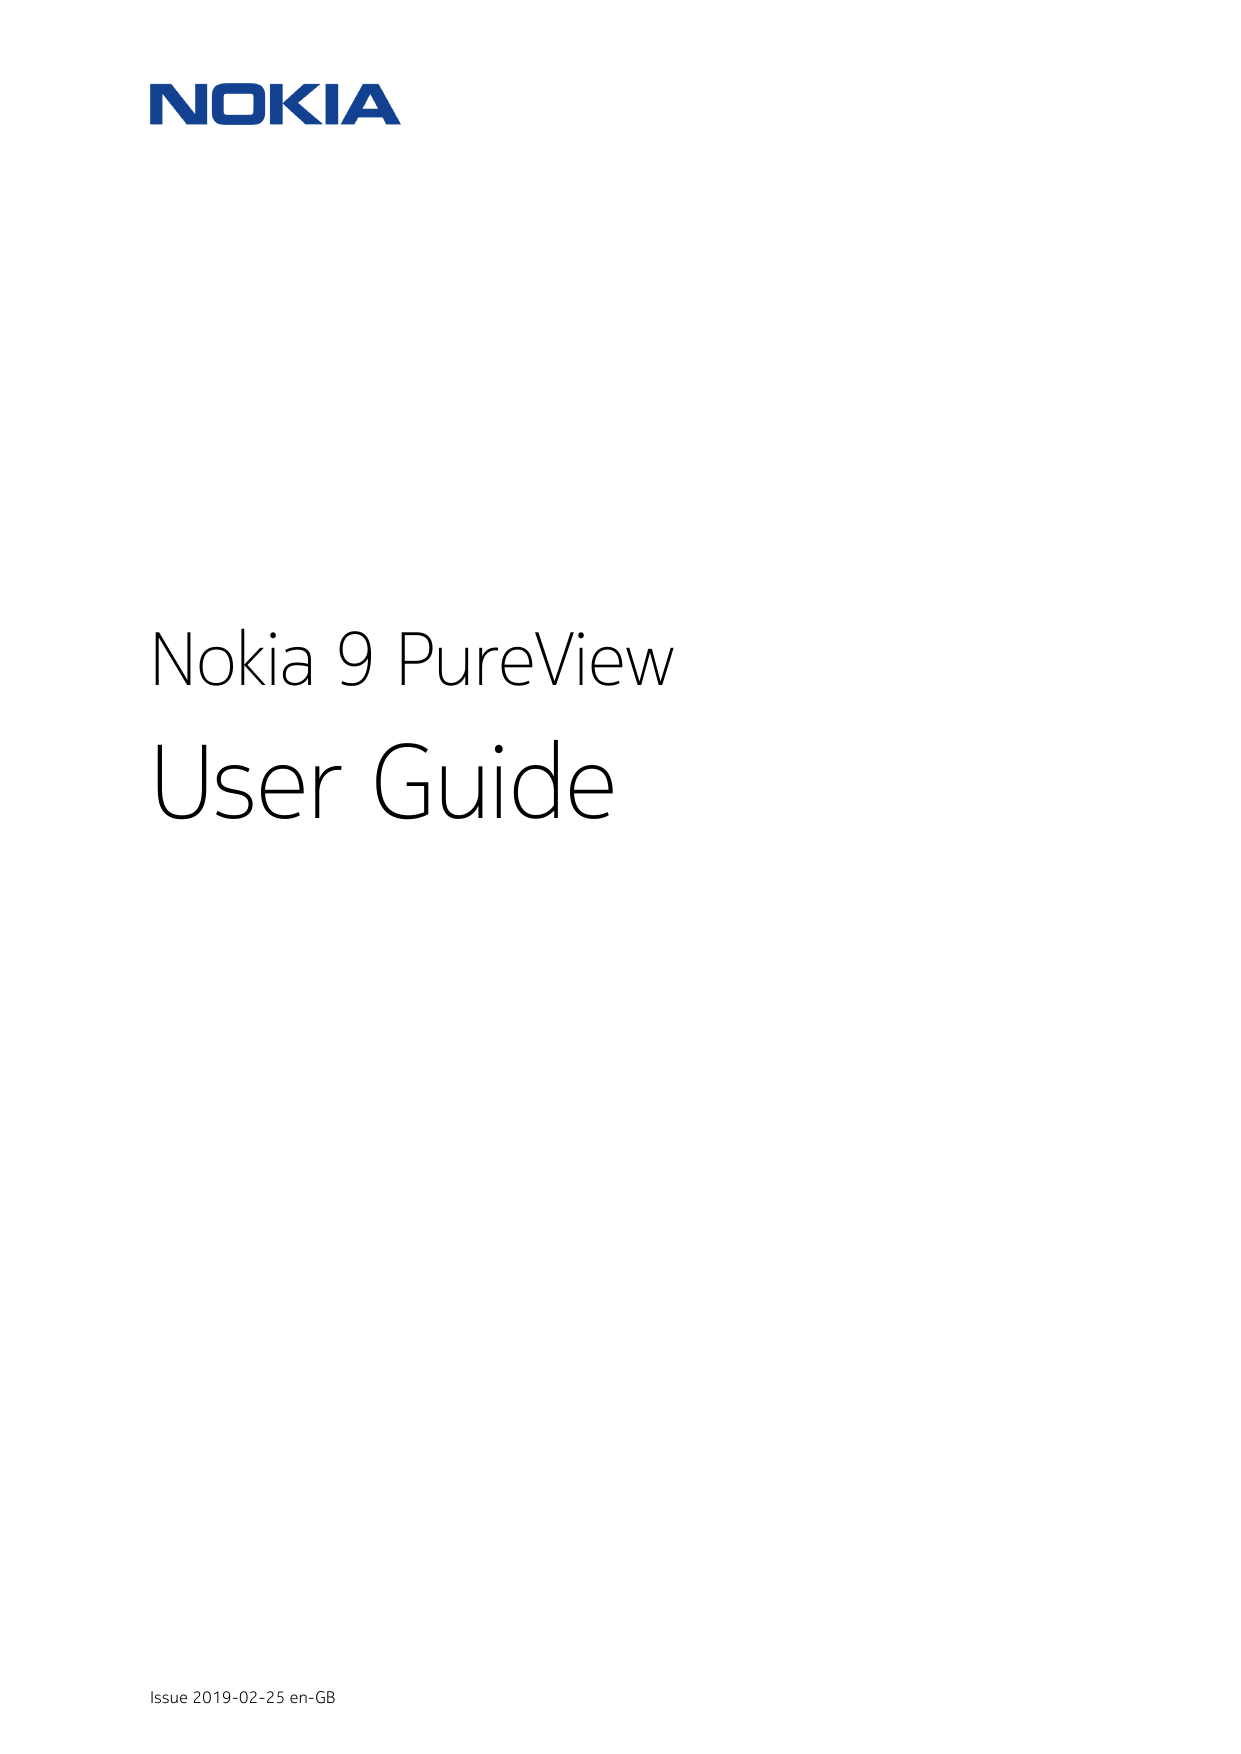 Nokia 9 PureViewUser GuideIssue 2019-02-25 en-GB